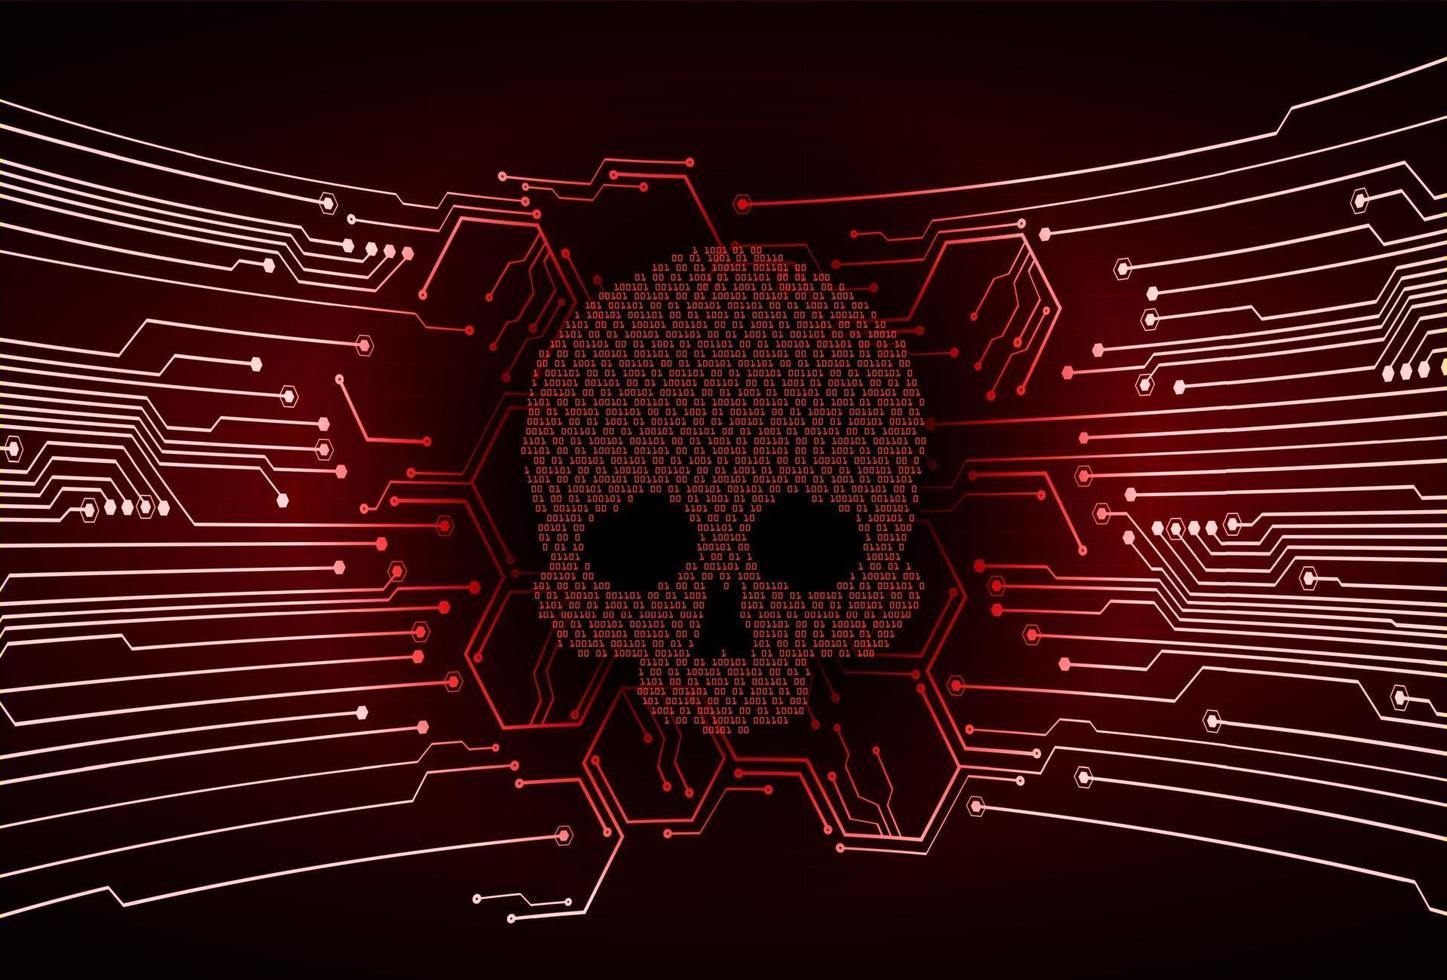 Cyber-Hacker-Angriffshintergrund, Schädelvektor vektor